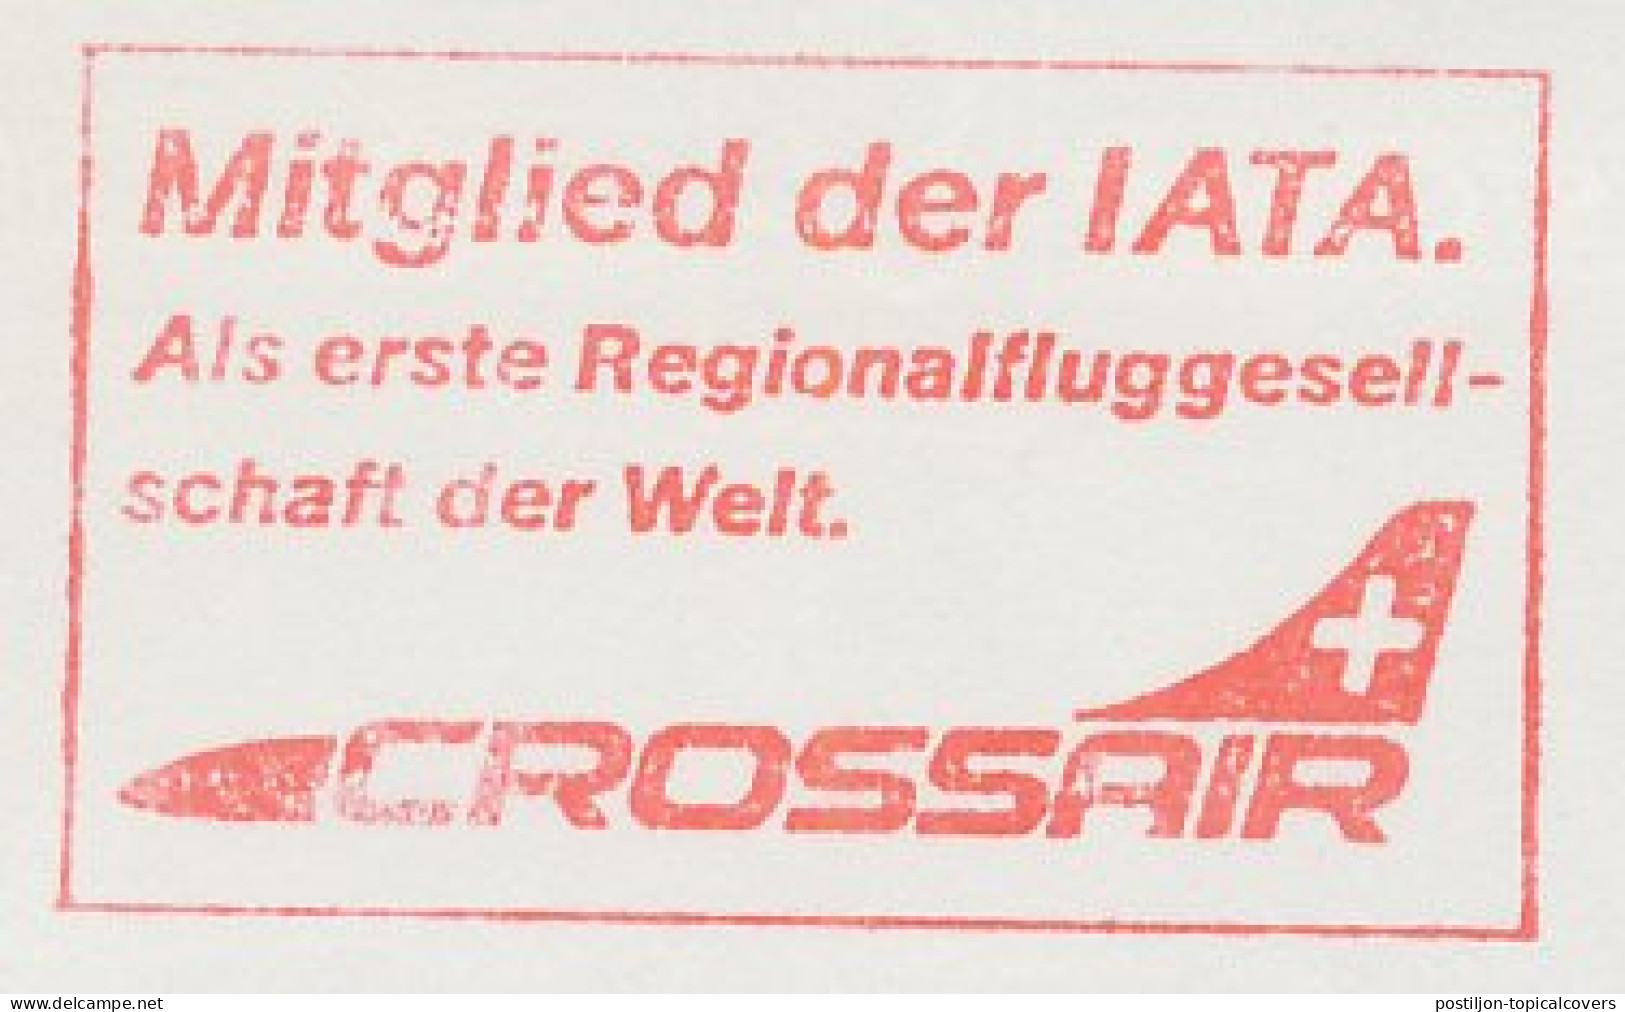 Meter Cut Switzerland 1986 Airplane - Crossair - Vliegtuigen